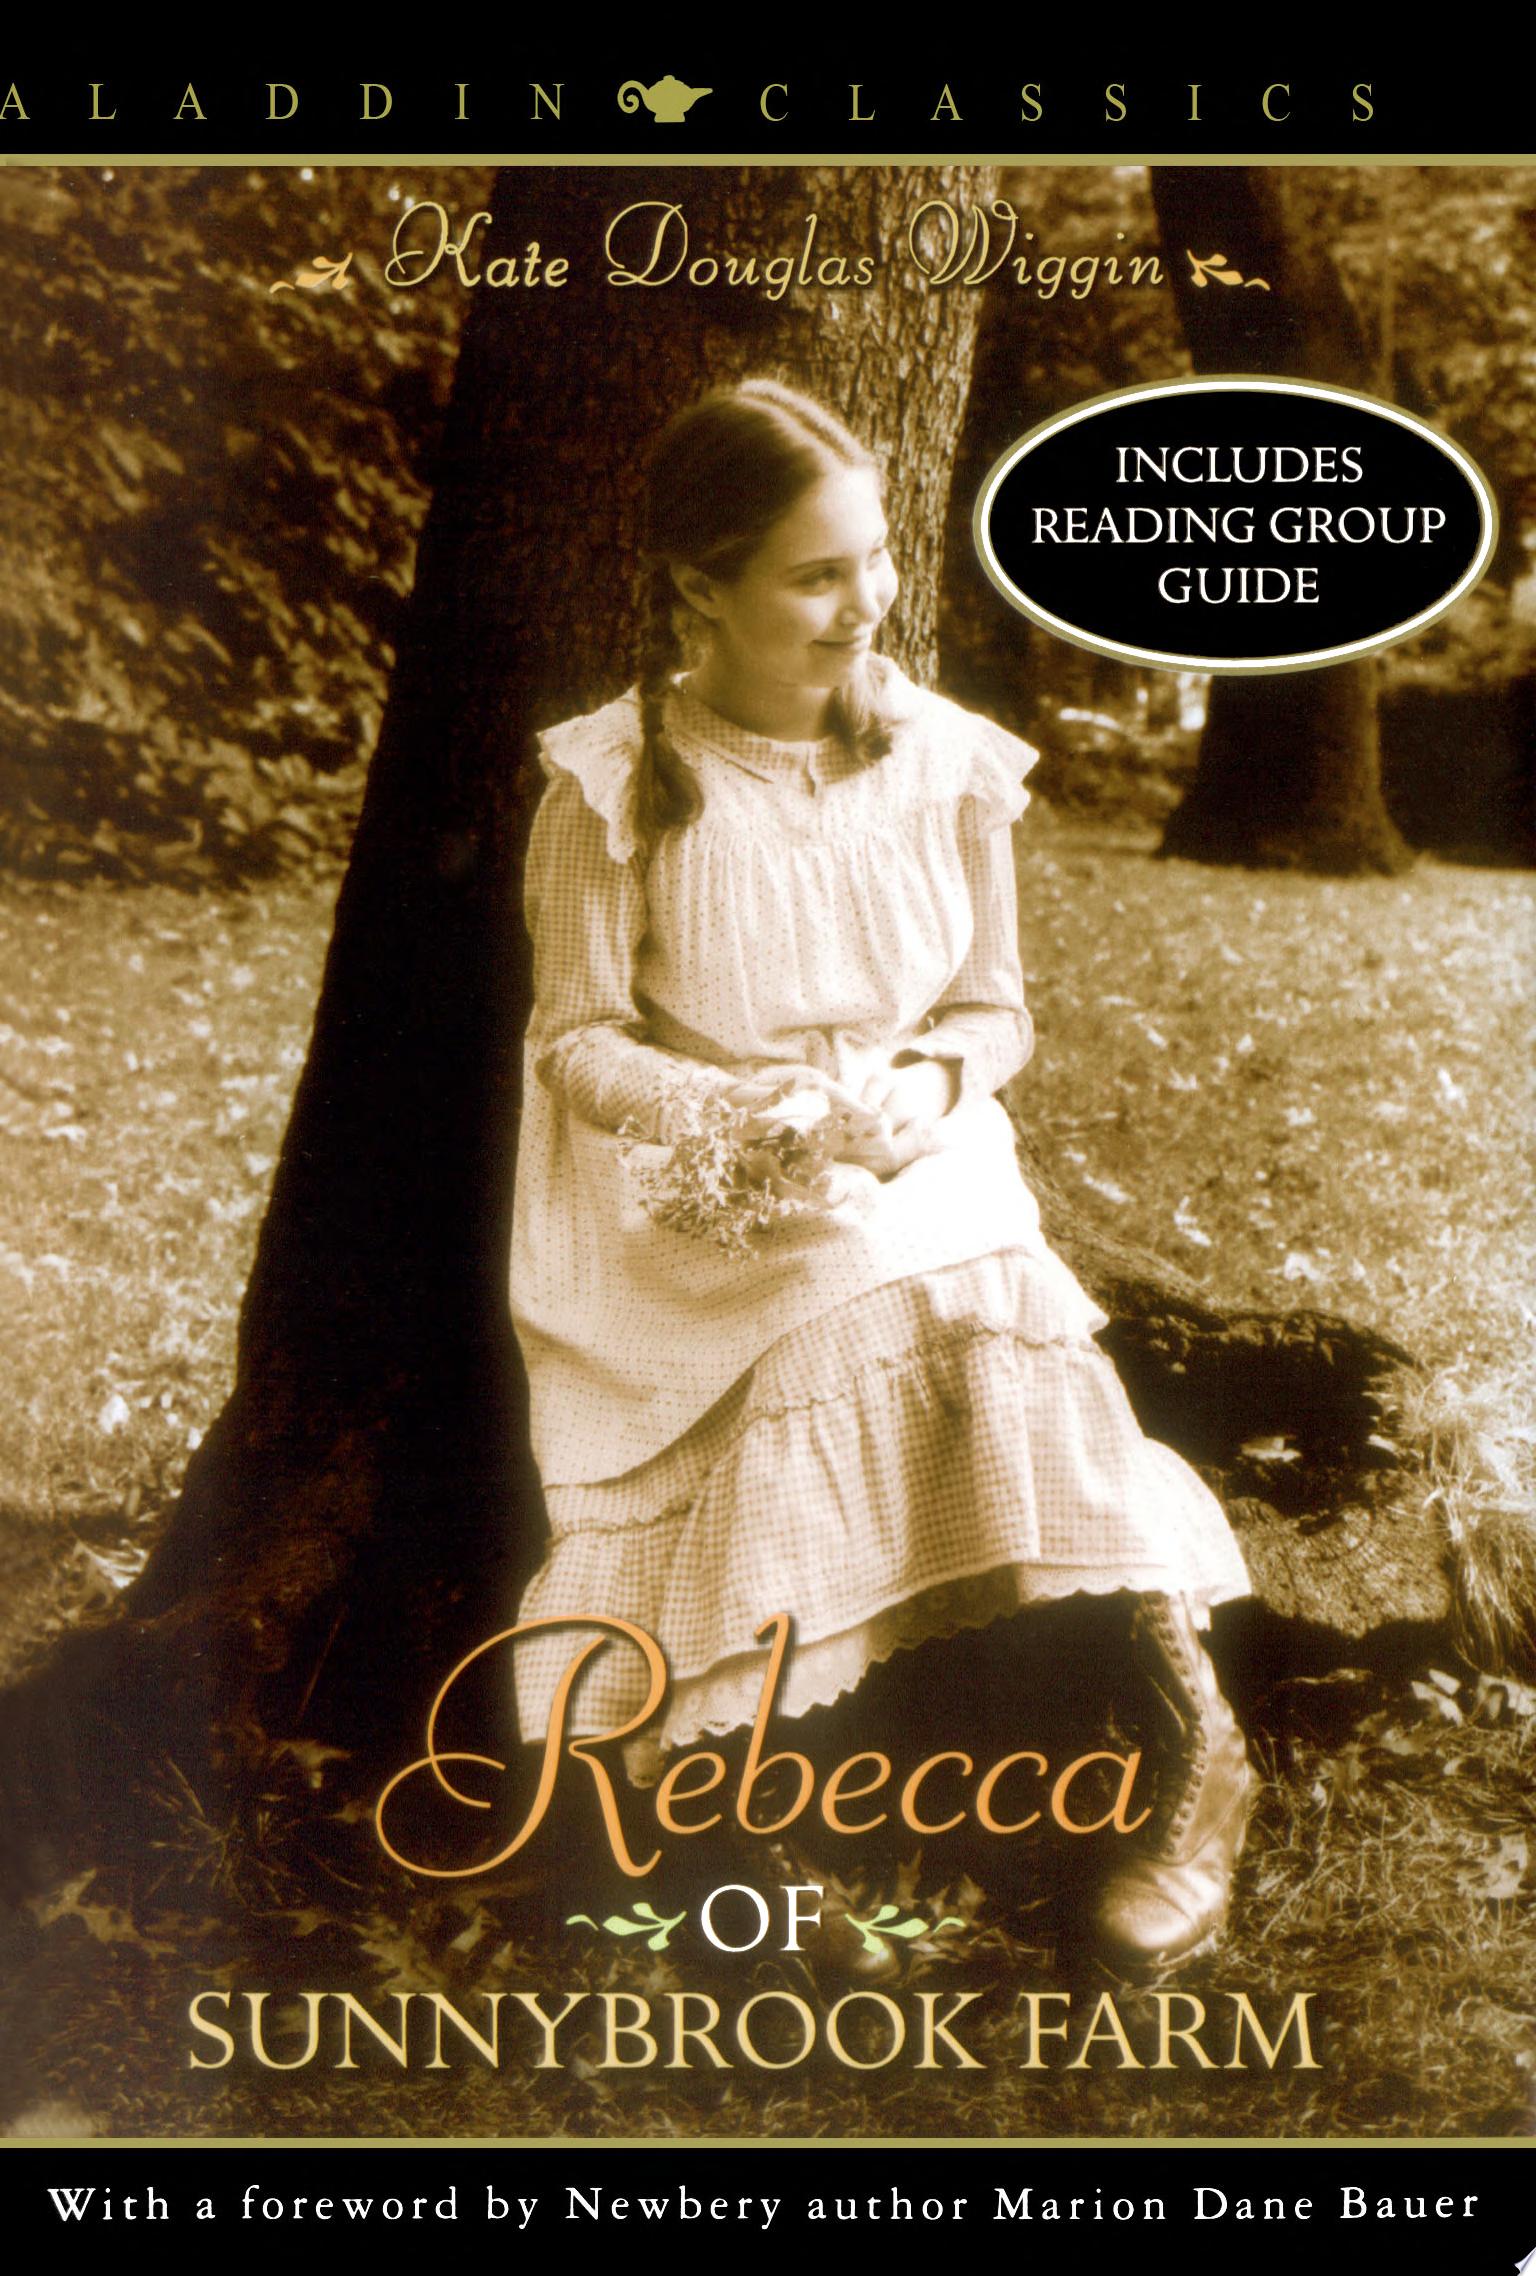 Image for "Rebecca of Sunnybrook Farm"